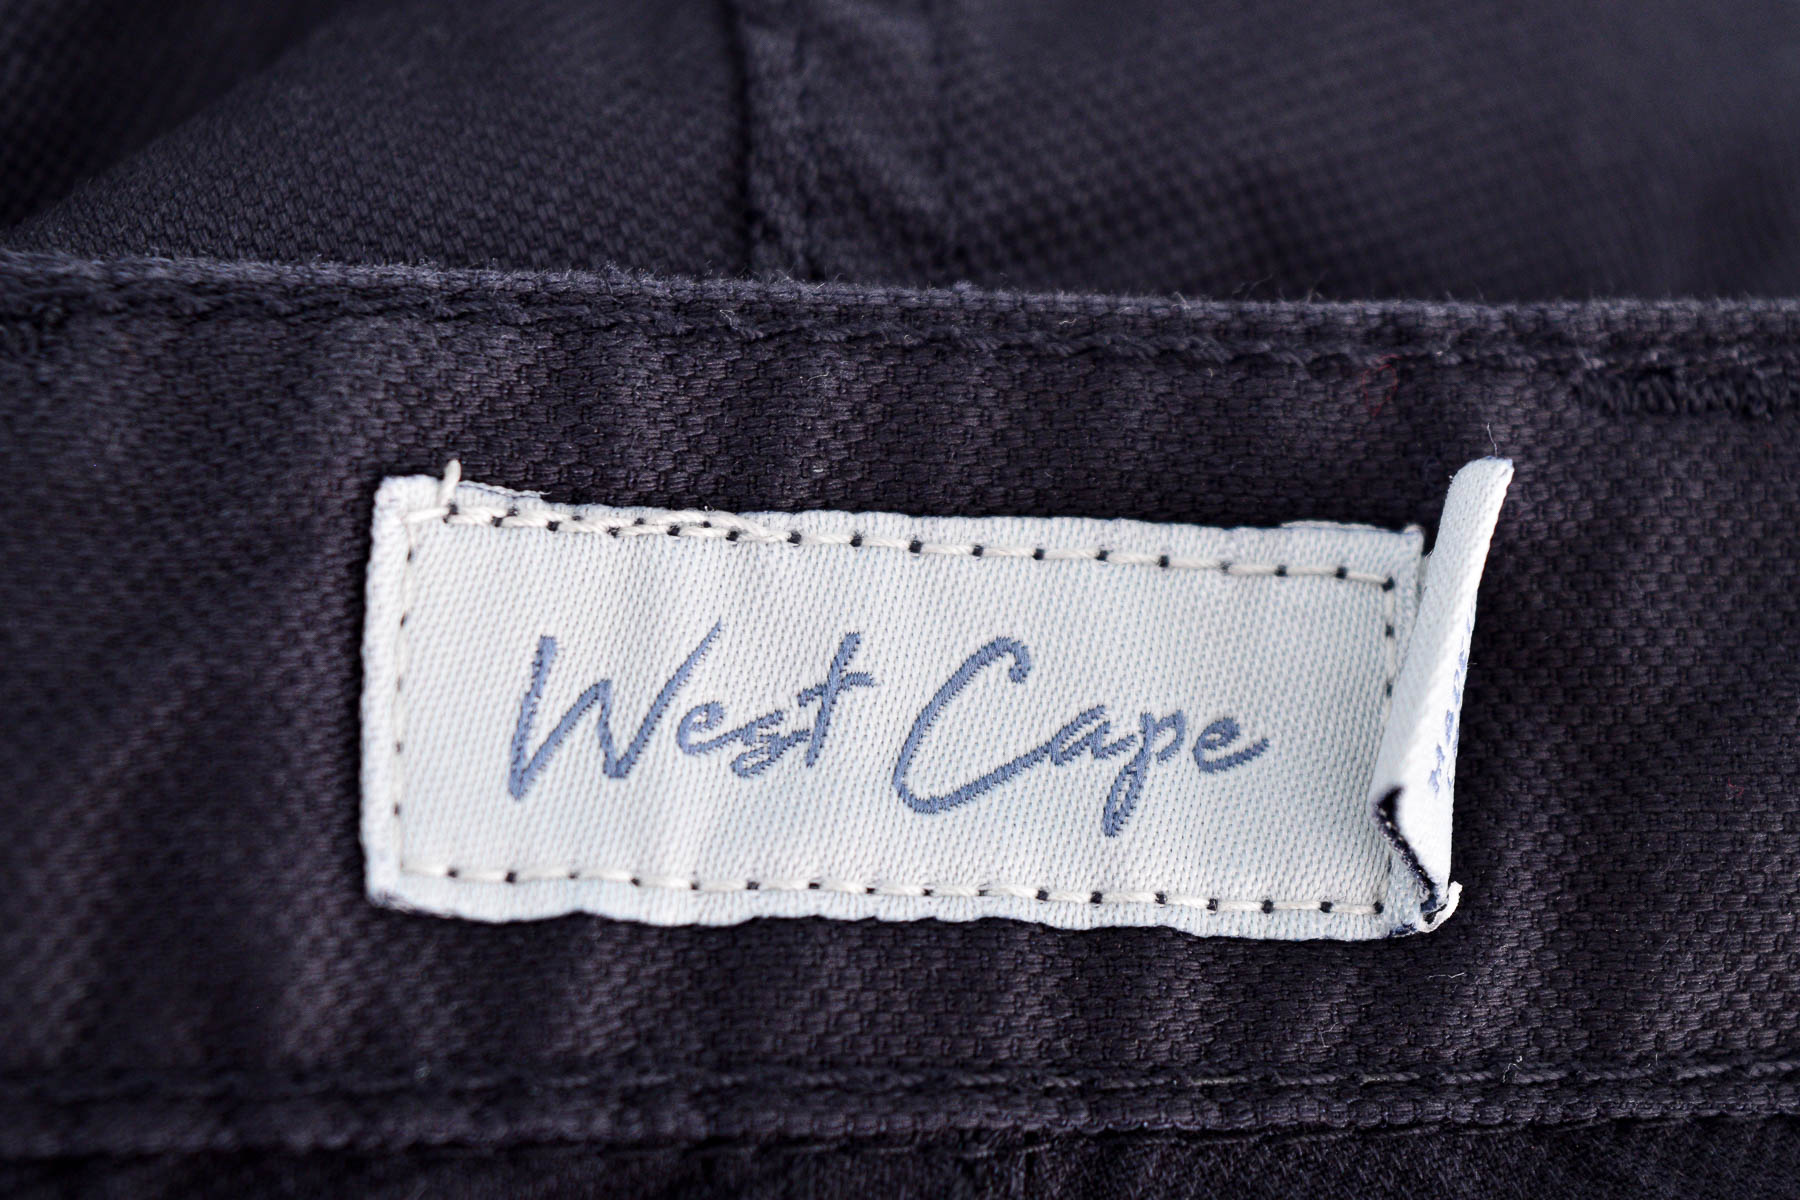 Men's trousers - West Cape - 2